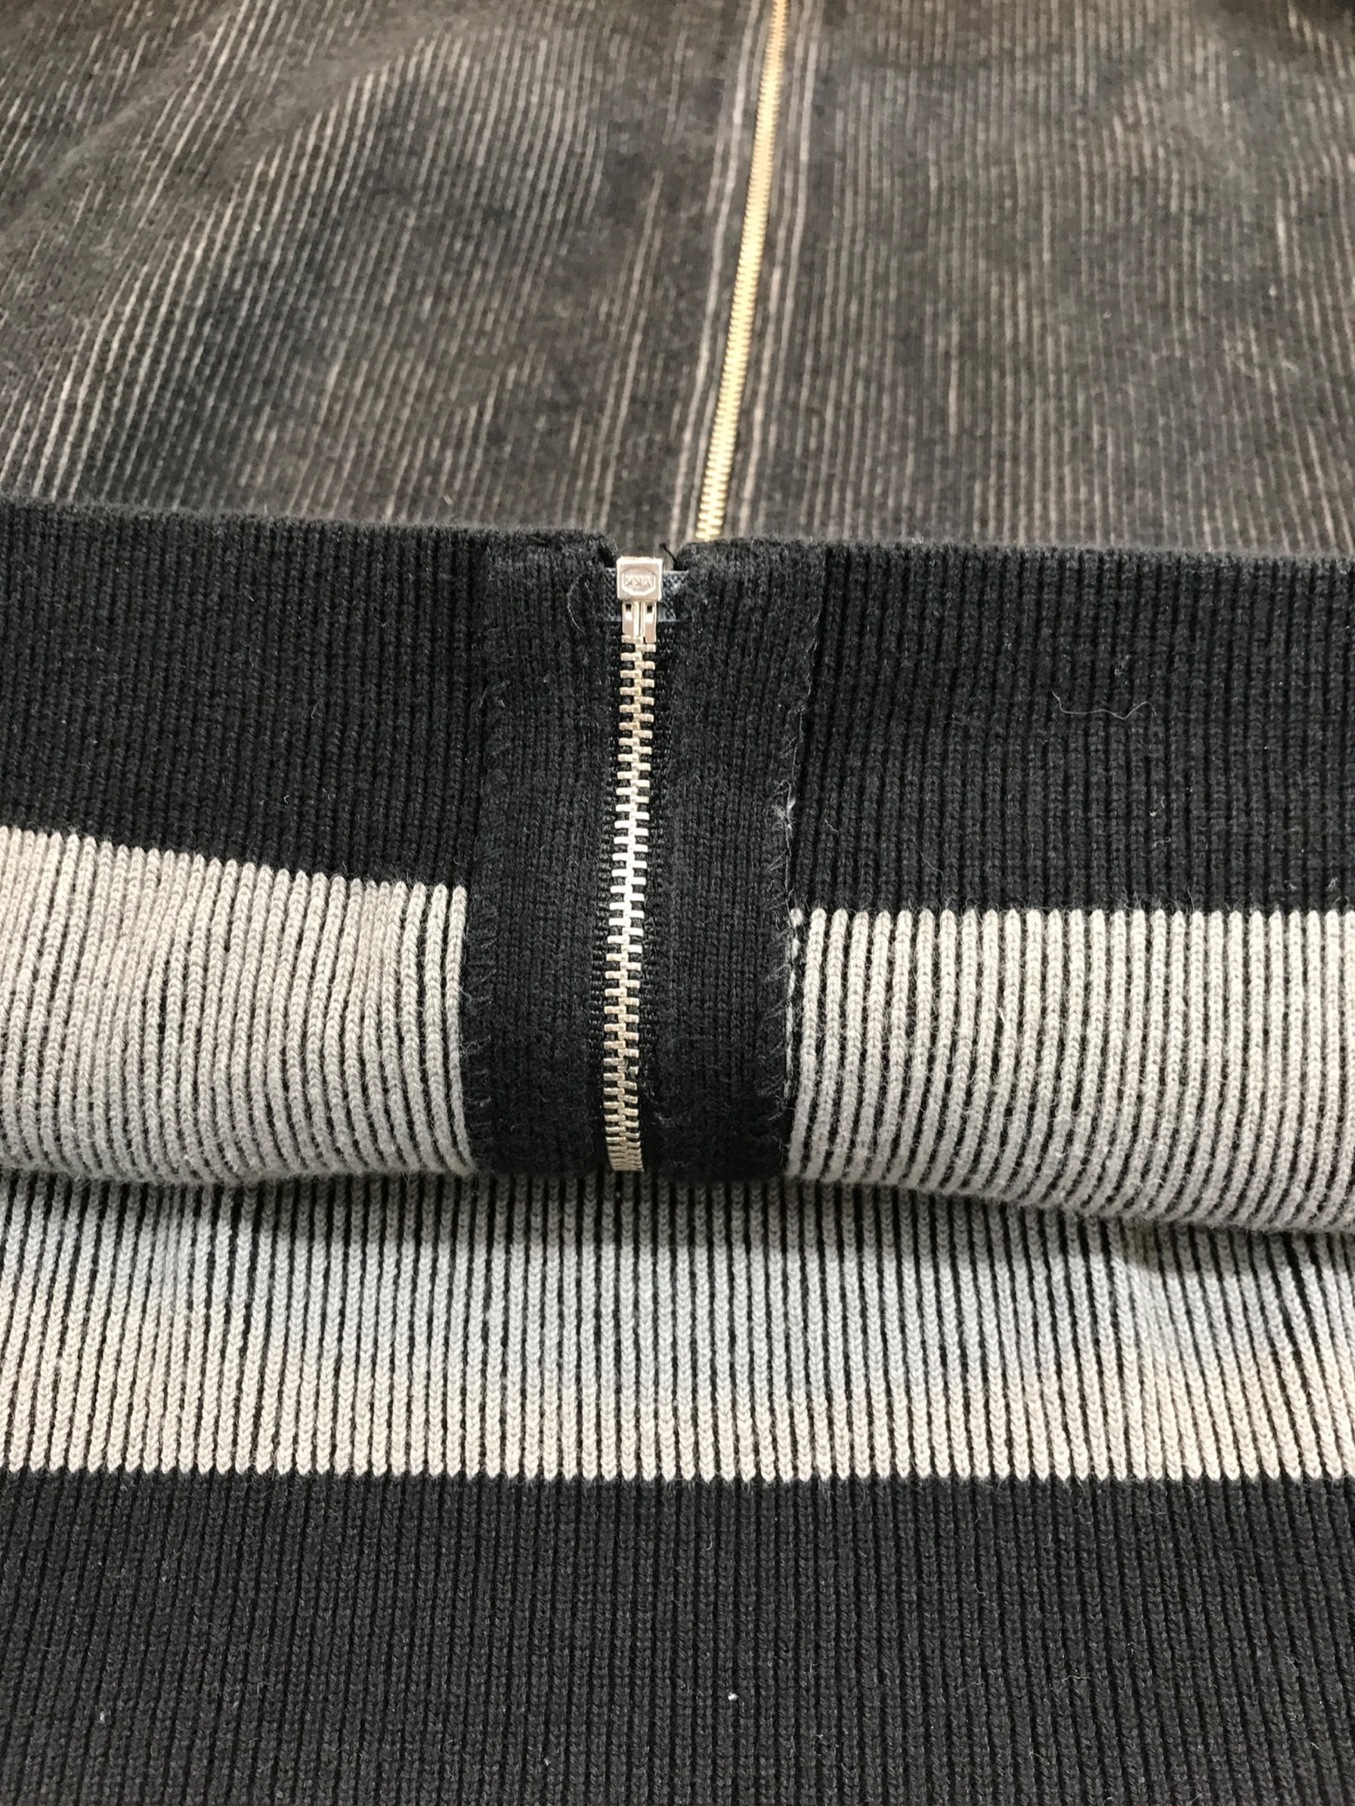 SUPREME (シュプリーム) 2-Tone Ribbed ZIP UP Sweater（２トンリブジップアップスウェット） ブラック×グレー  サイズ:XL